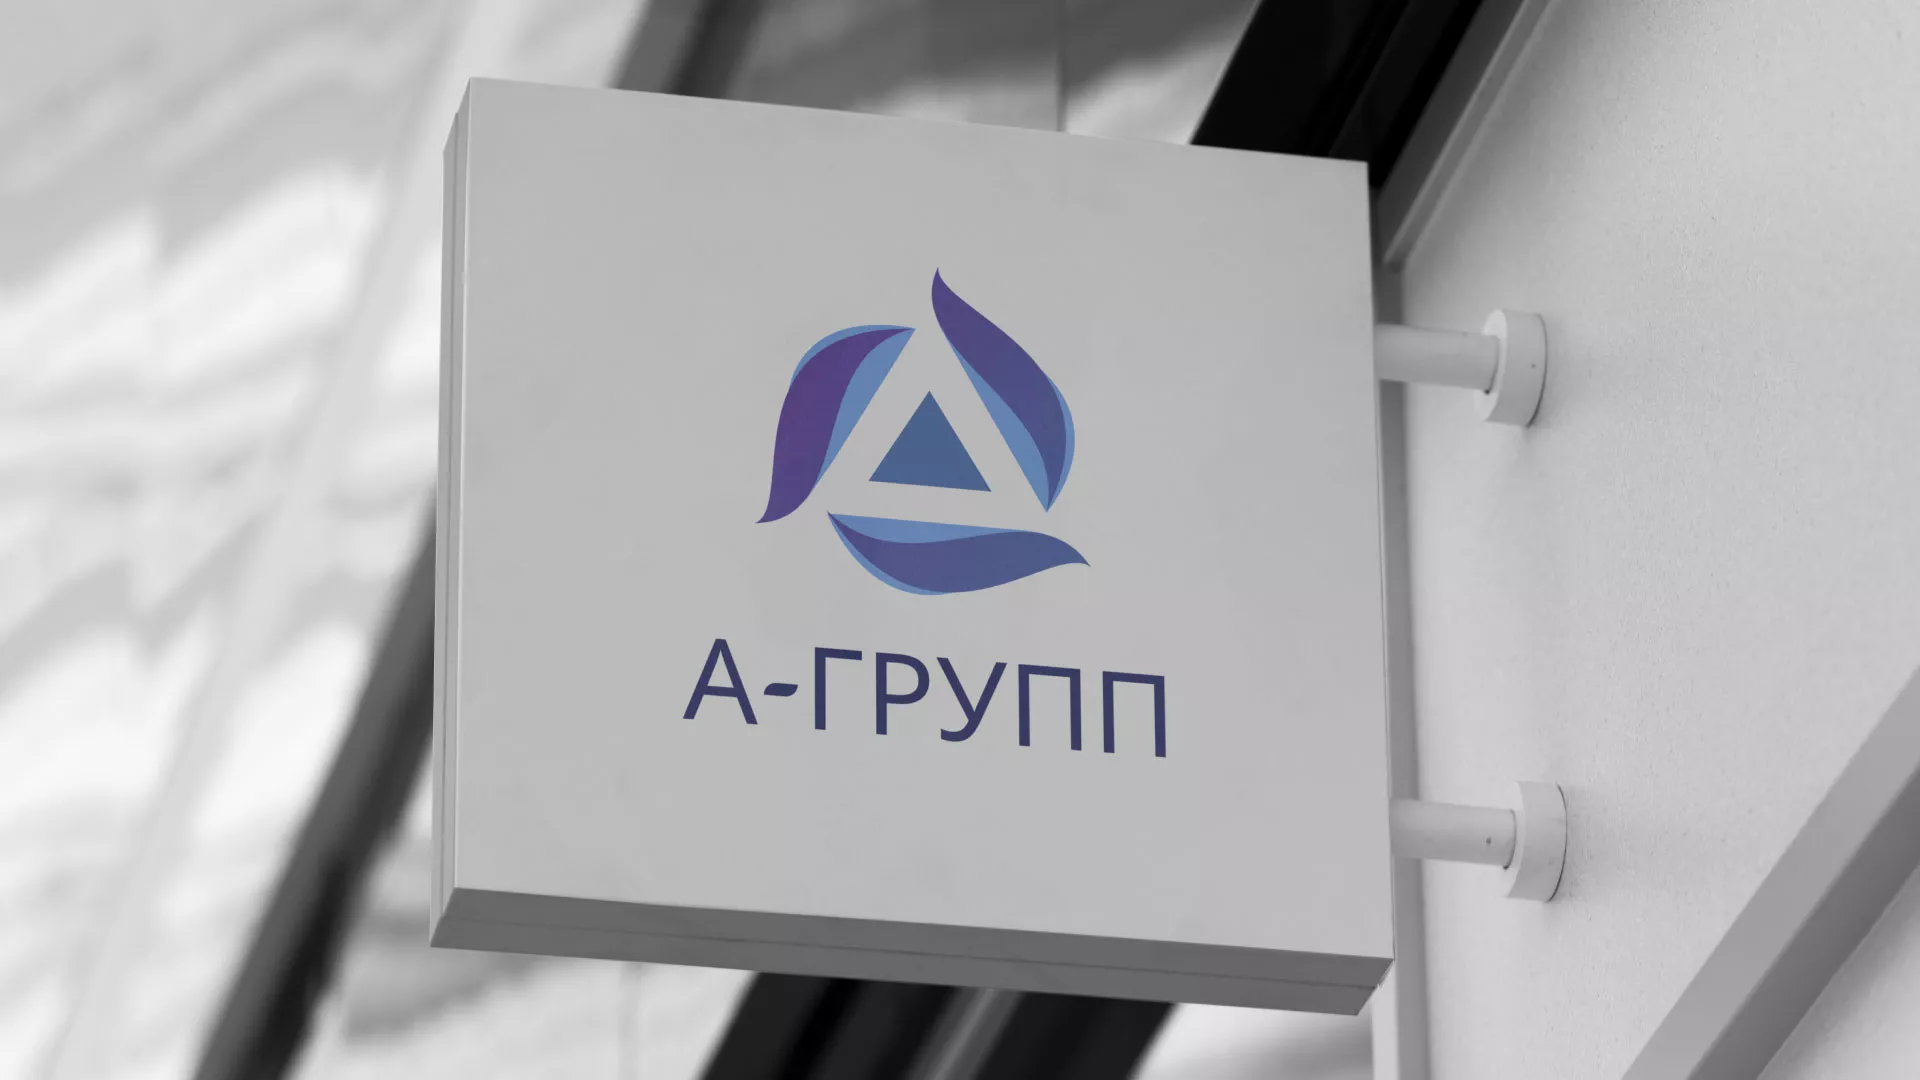 Создание логотипа компании «А-ГРУПП» в Александровске-Сахалинском